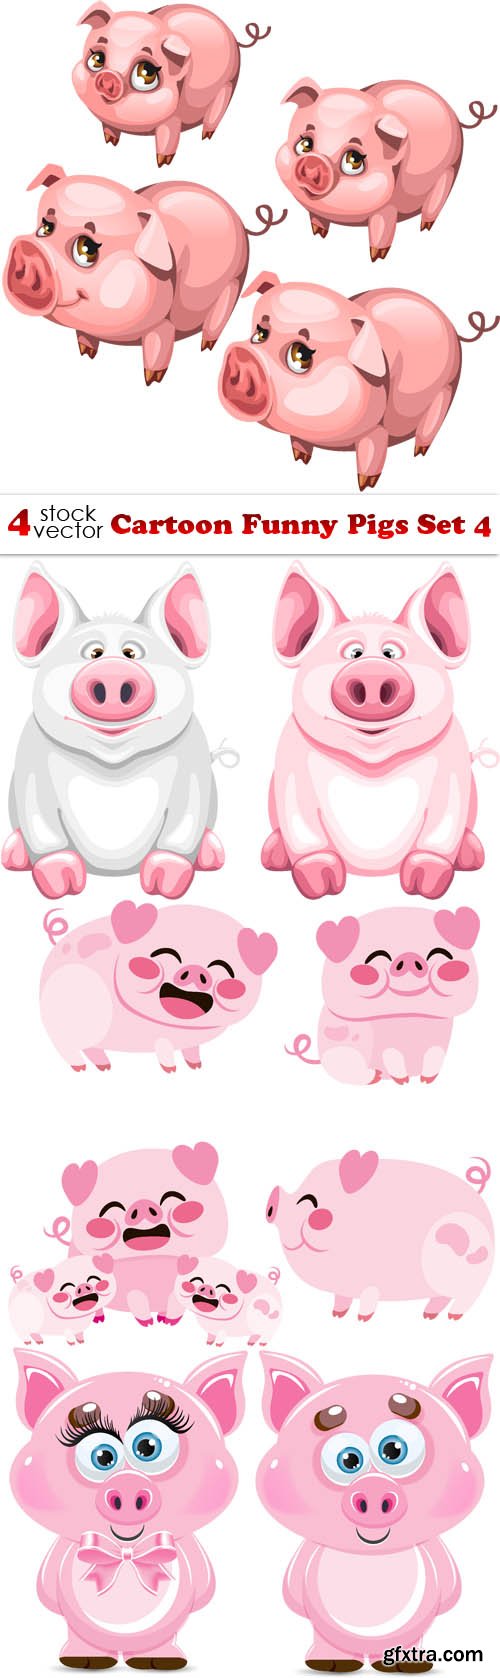 Vectors - Cartoon Funny Pigs Set 4